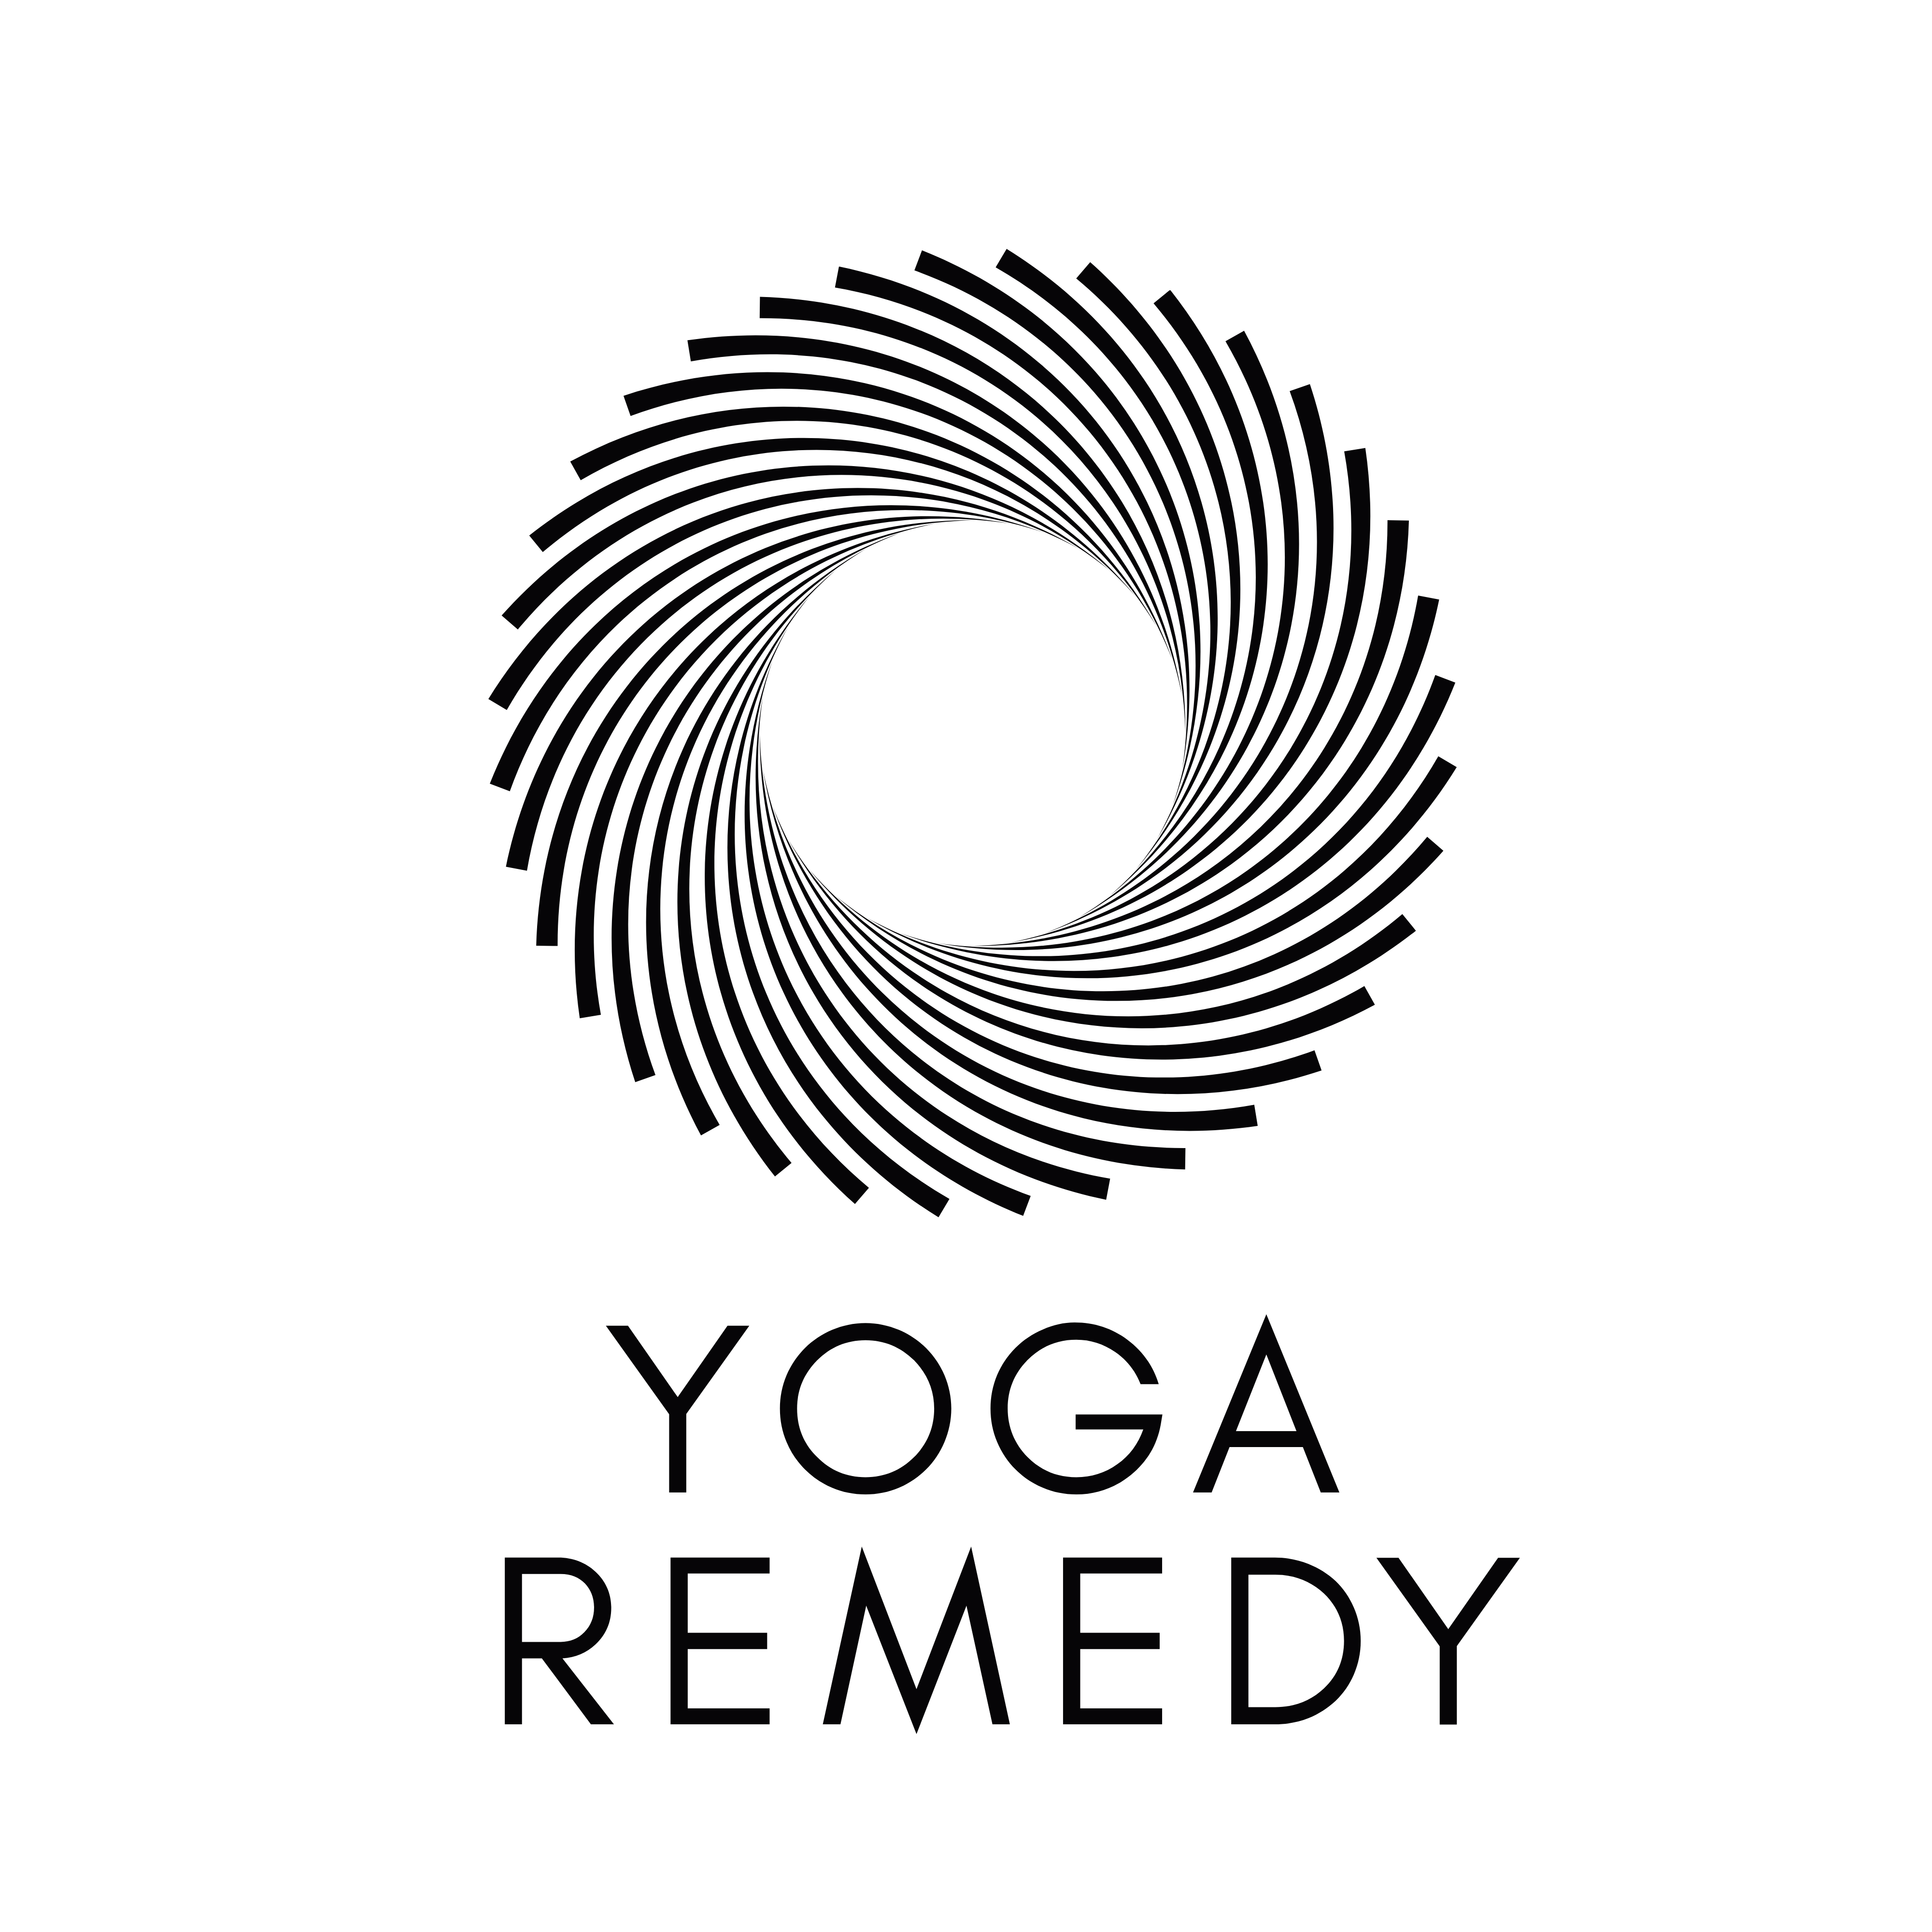 Yoga Remedy